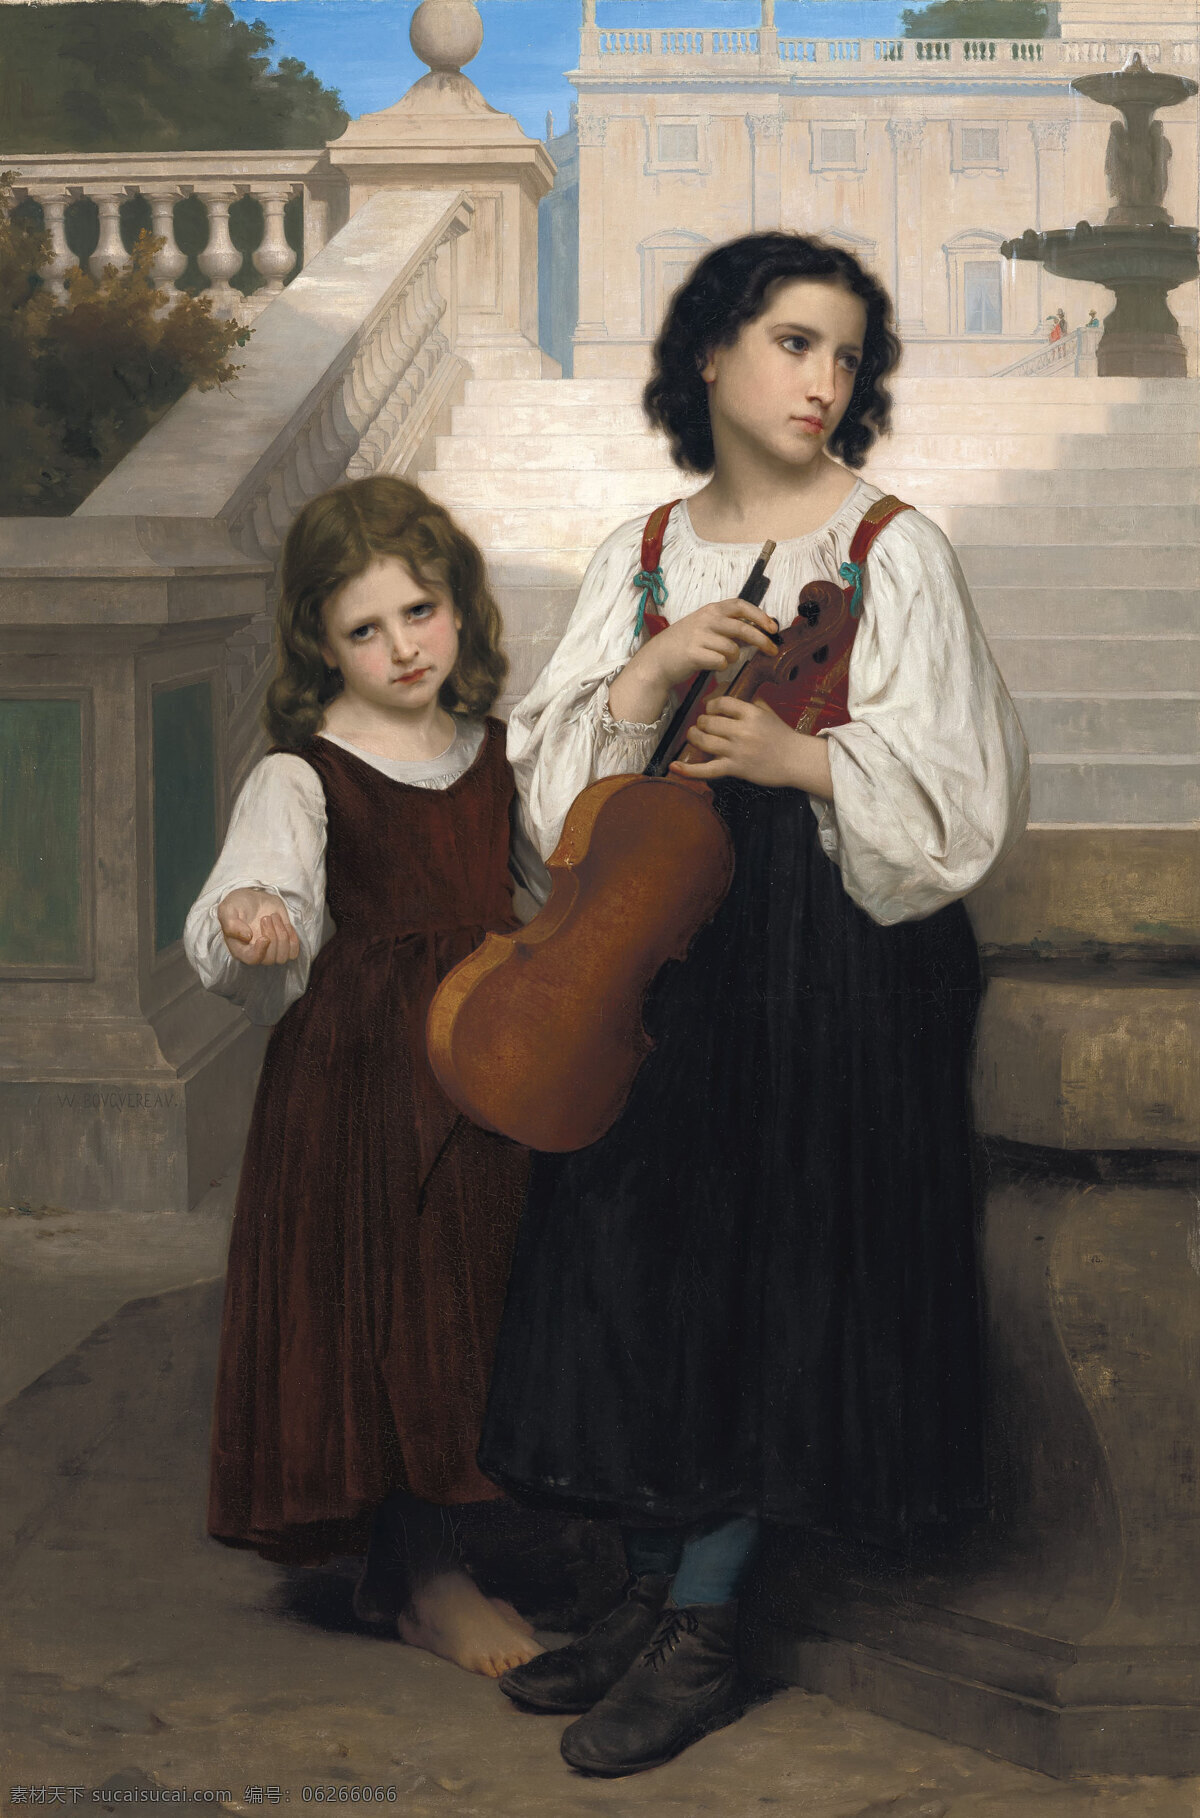 威廉 阿道夫 布格罗作品 法国画家 两位姑娘 庄园 喷泉边 手提小提琴 19世纪油画 油画 文化艺术 绘画书法